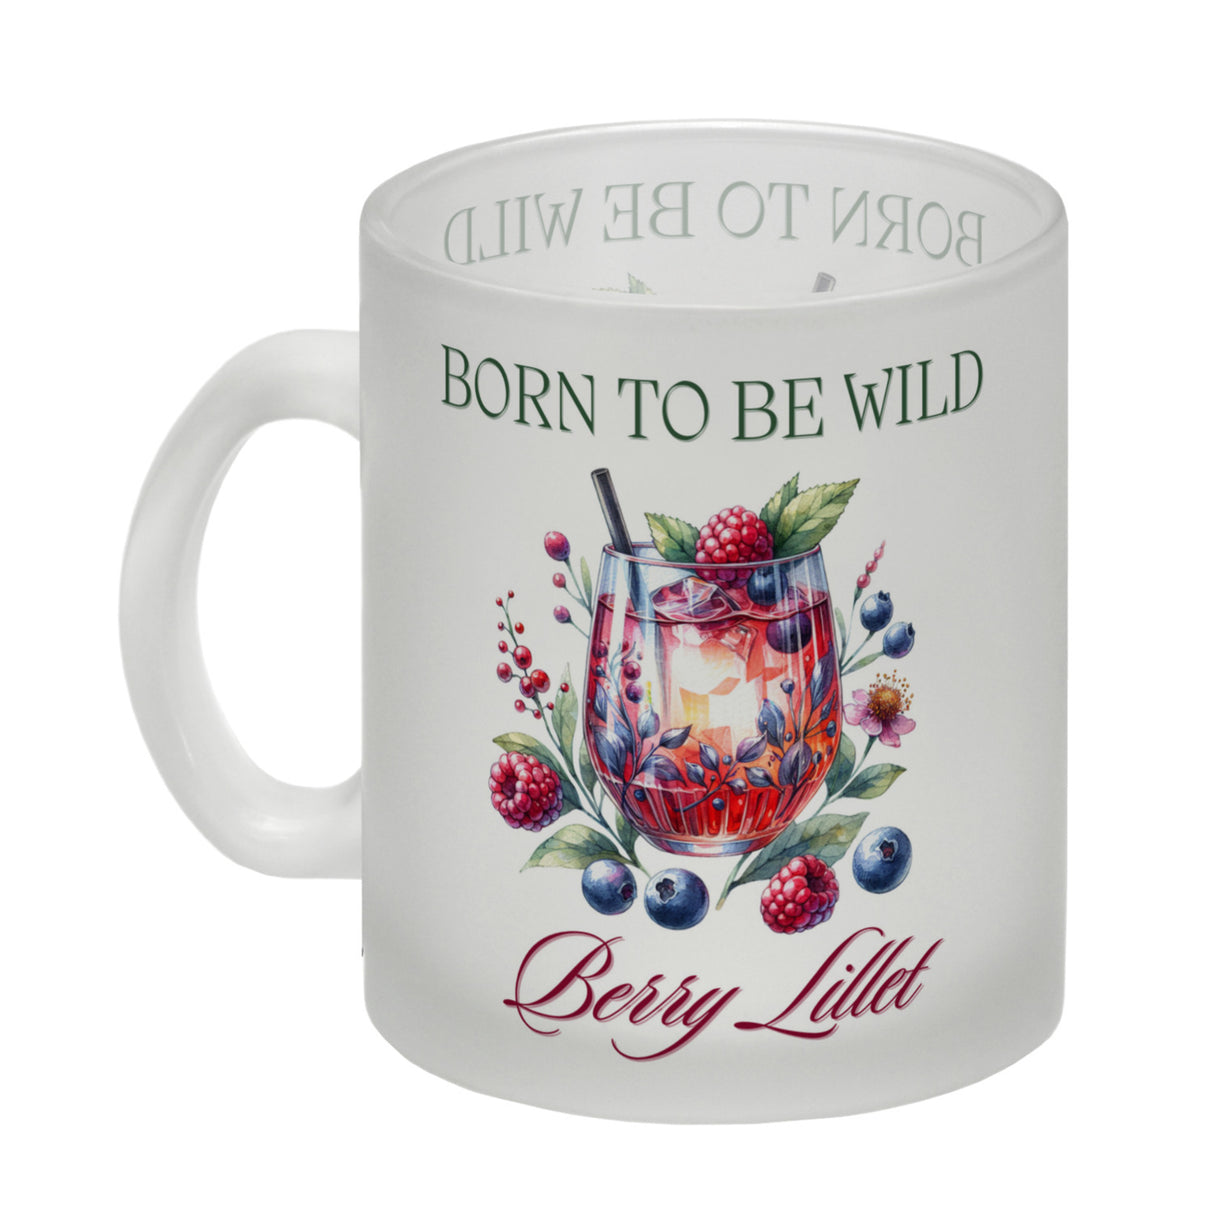 Wild Berry Lillet Kaffeebecher mit Spruch Born to be wild Berry Lillet